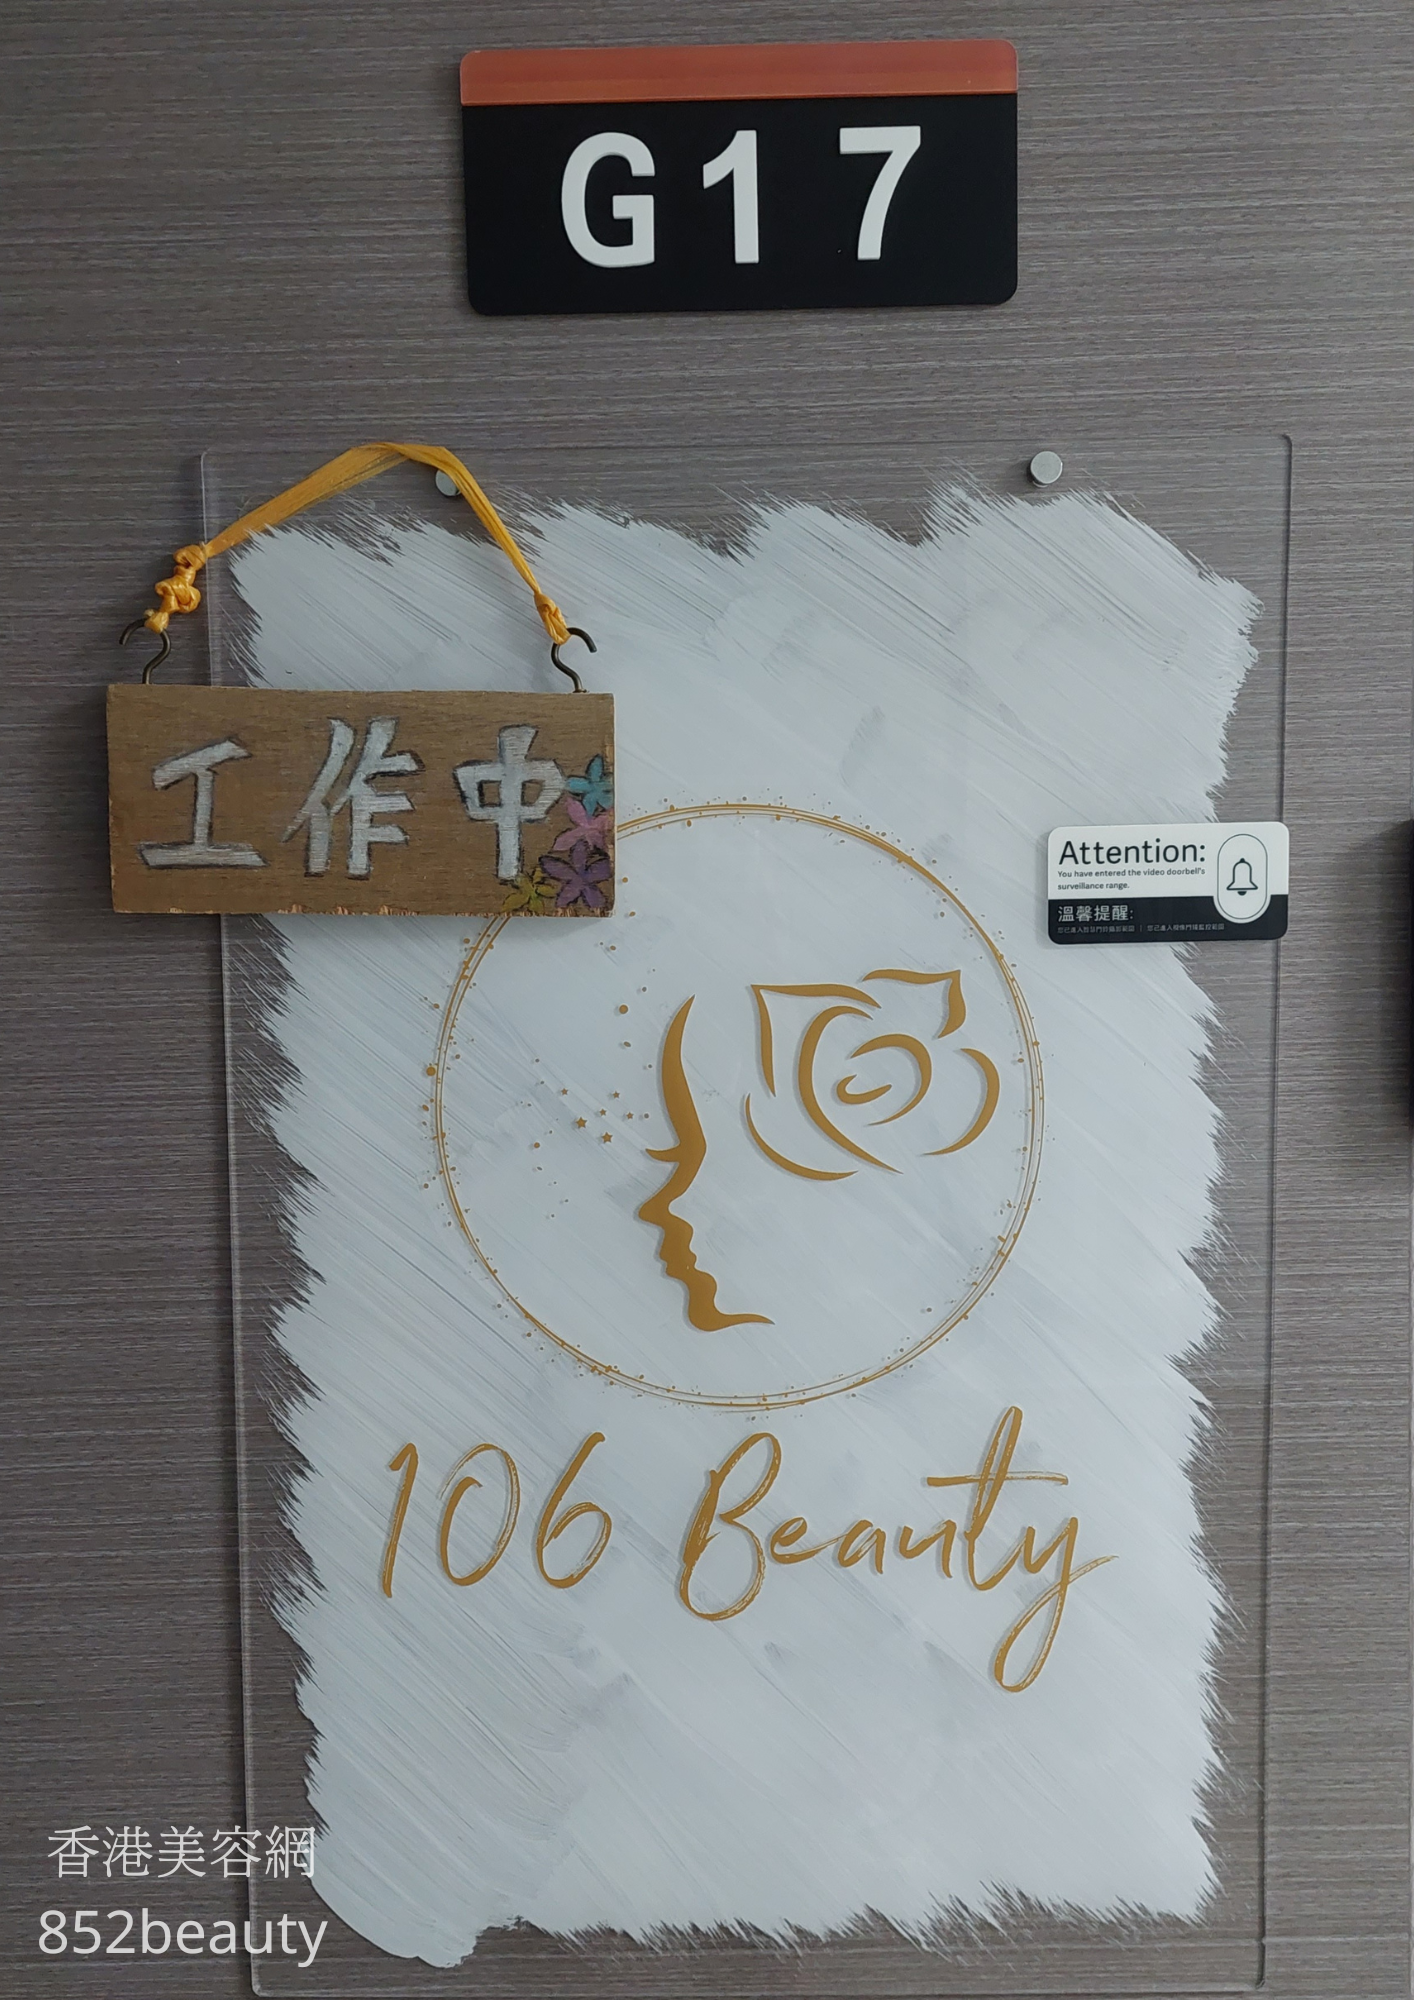 面部护理: 106 Beauty